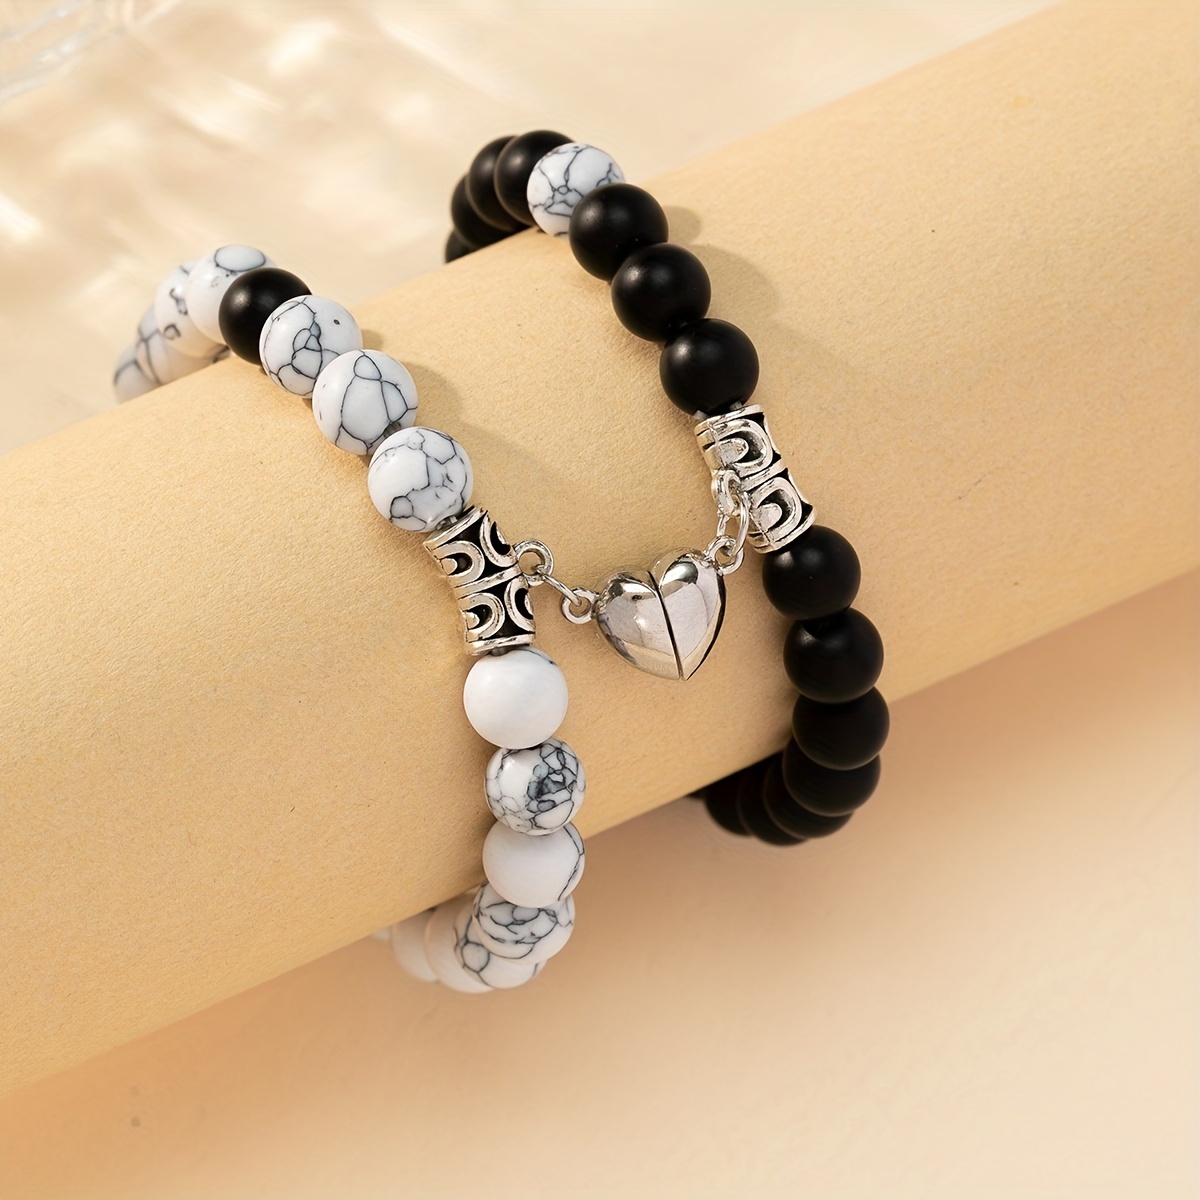 Black Dog Charm Beaded Bracelet, Handmade Stones